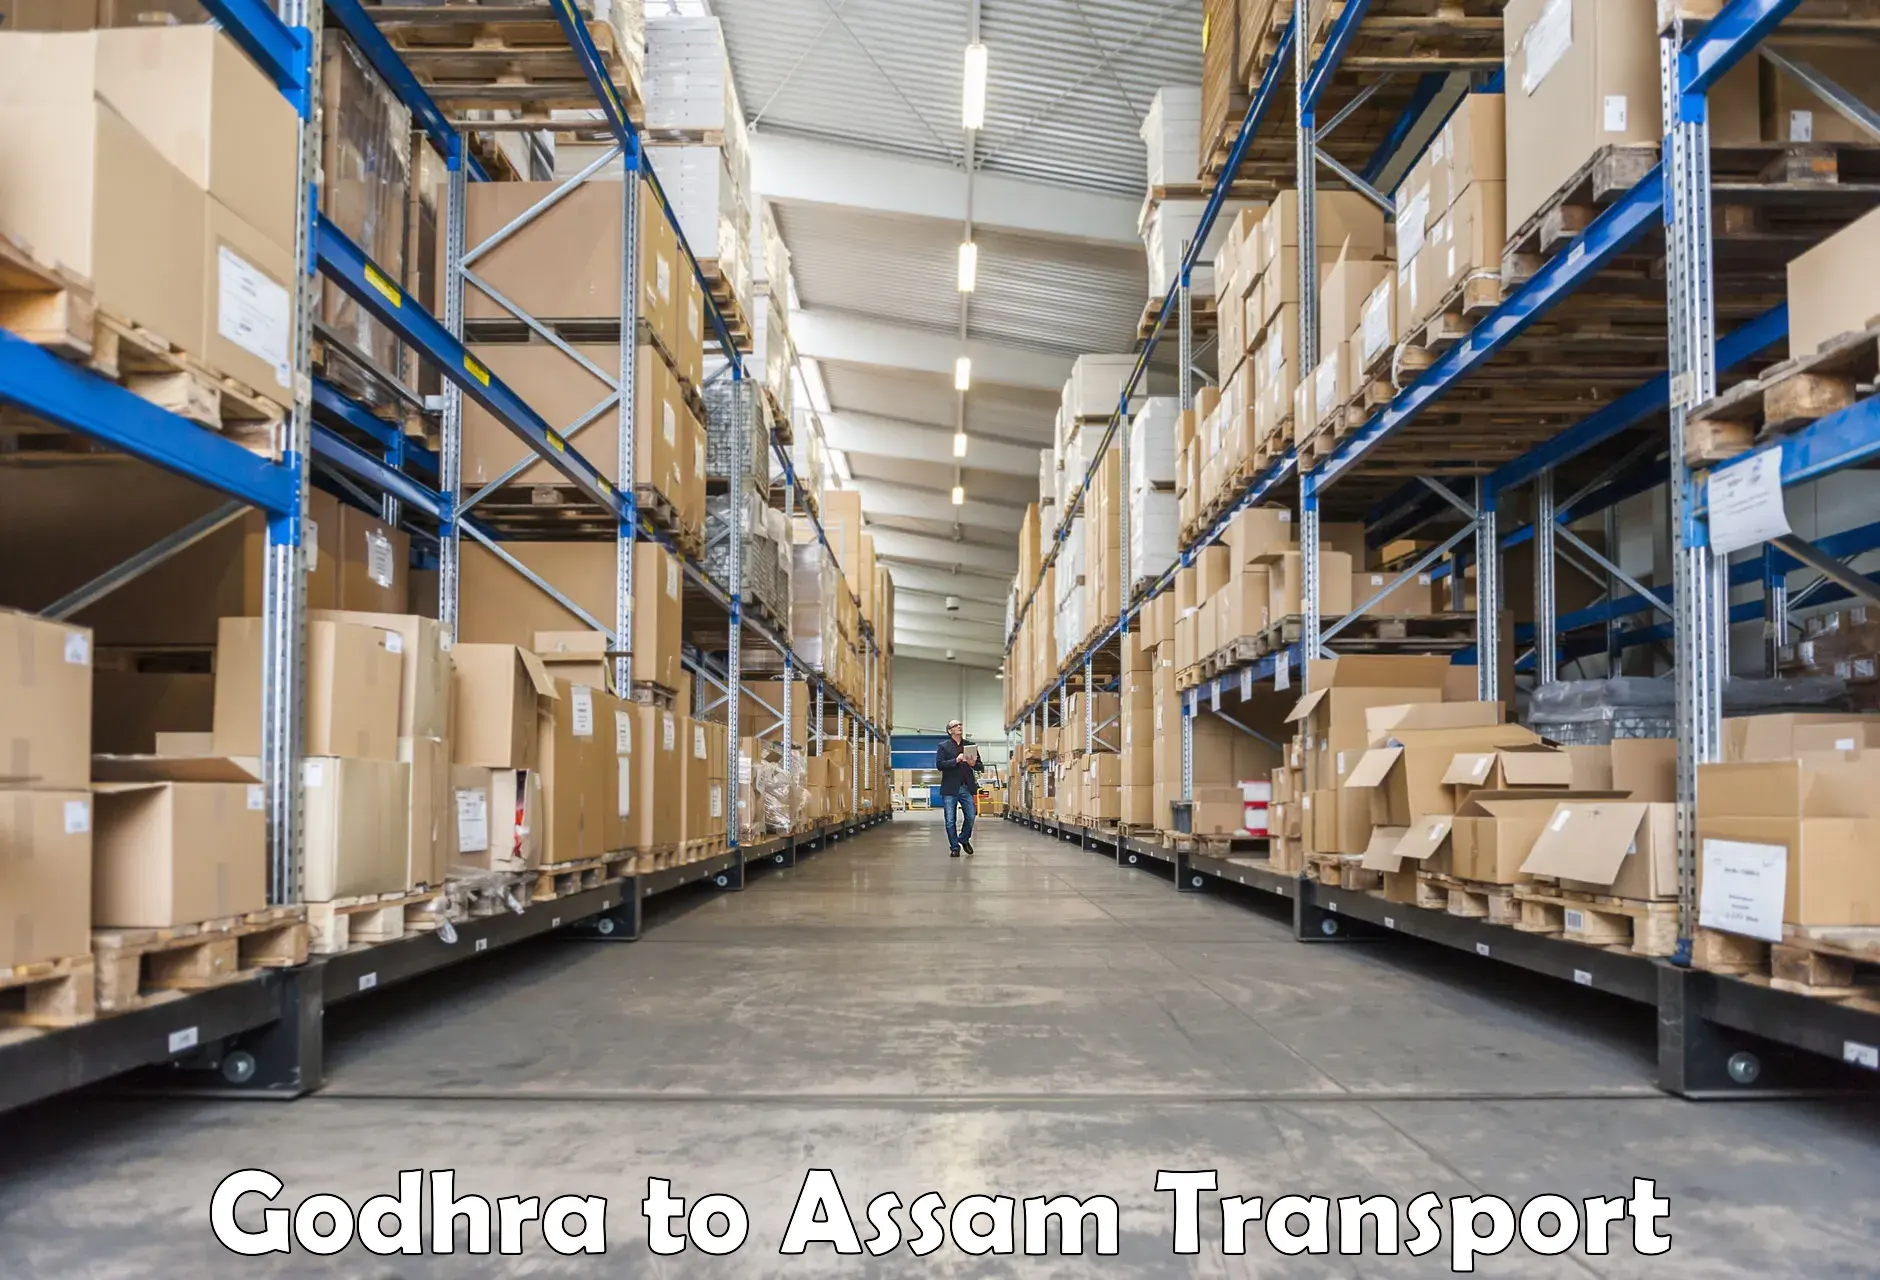 Nearest transport service Godhra to Lala Assam